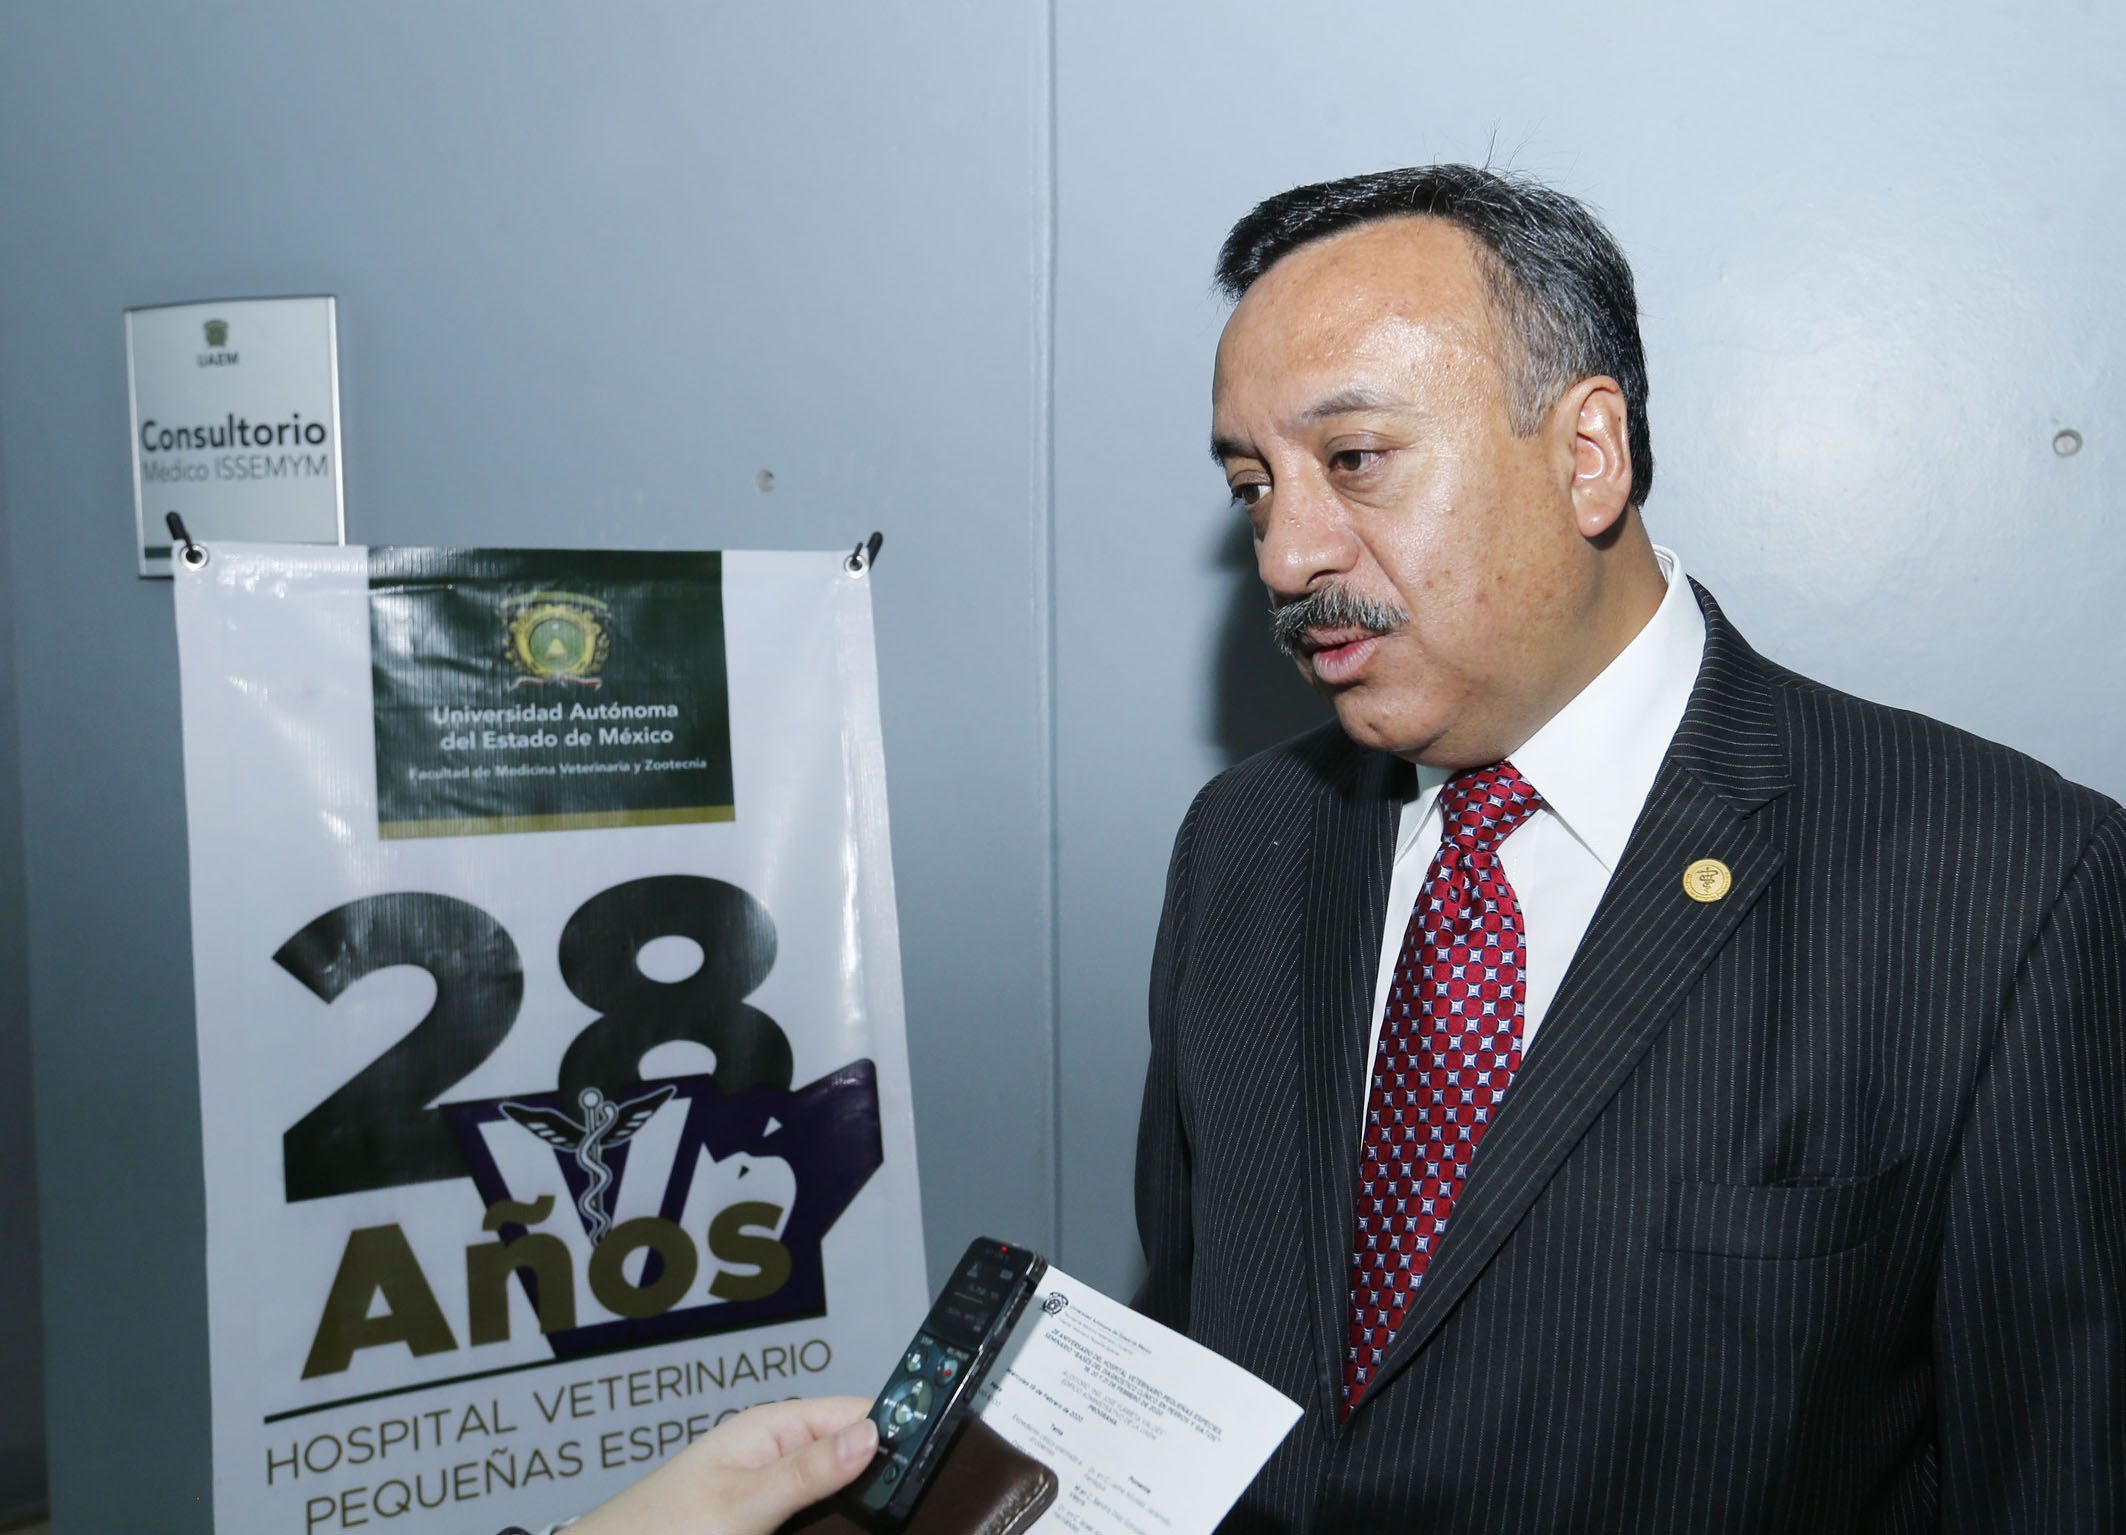 Hospital Veterinario para Pequeñas Especies de UAEM celebra 28 aniversario